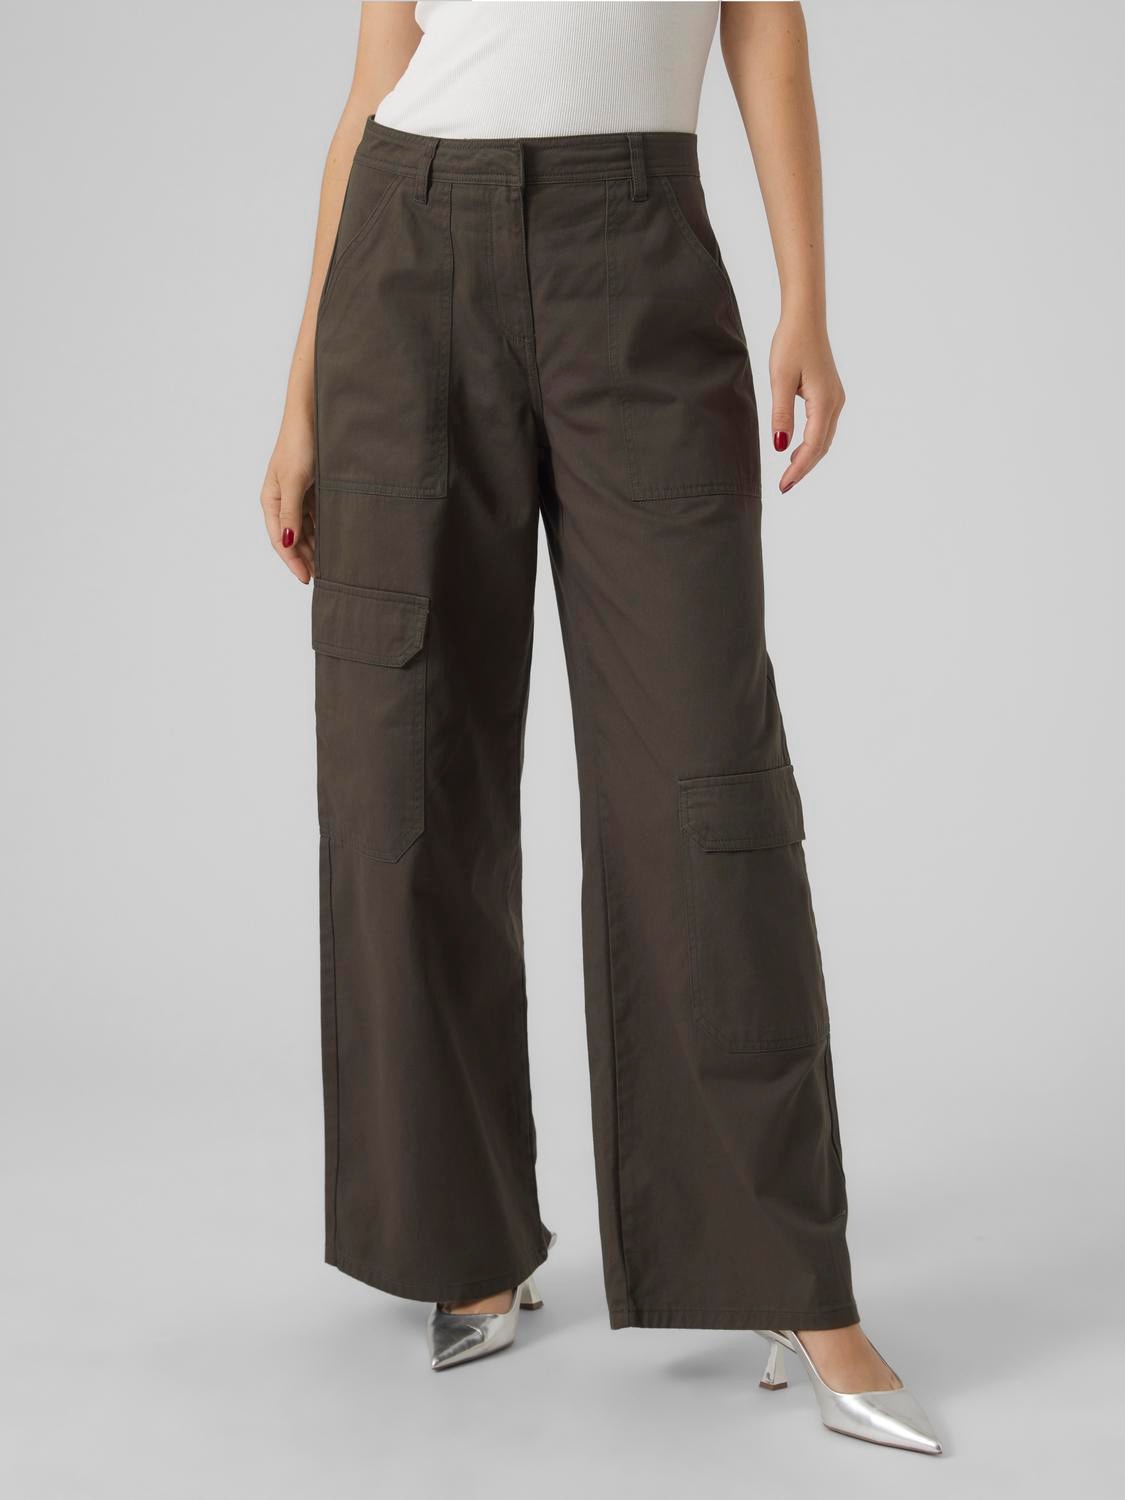 Vero Moda VMJOSIE Mid waist Trousers -Peat - 10291927